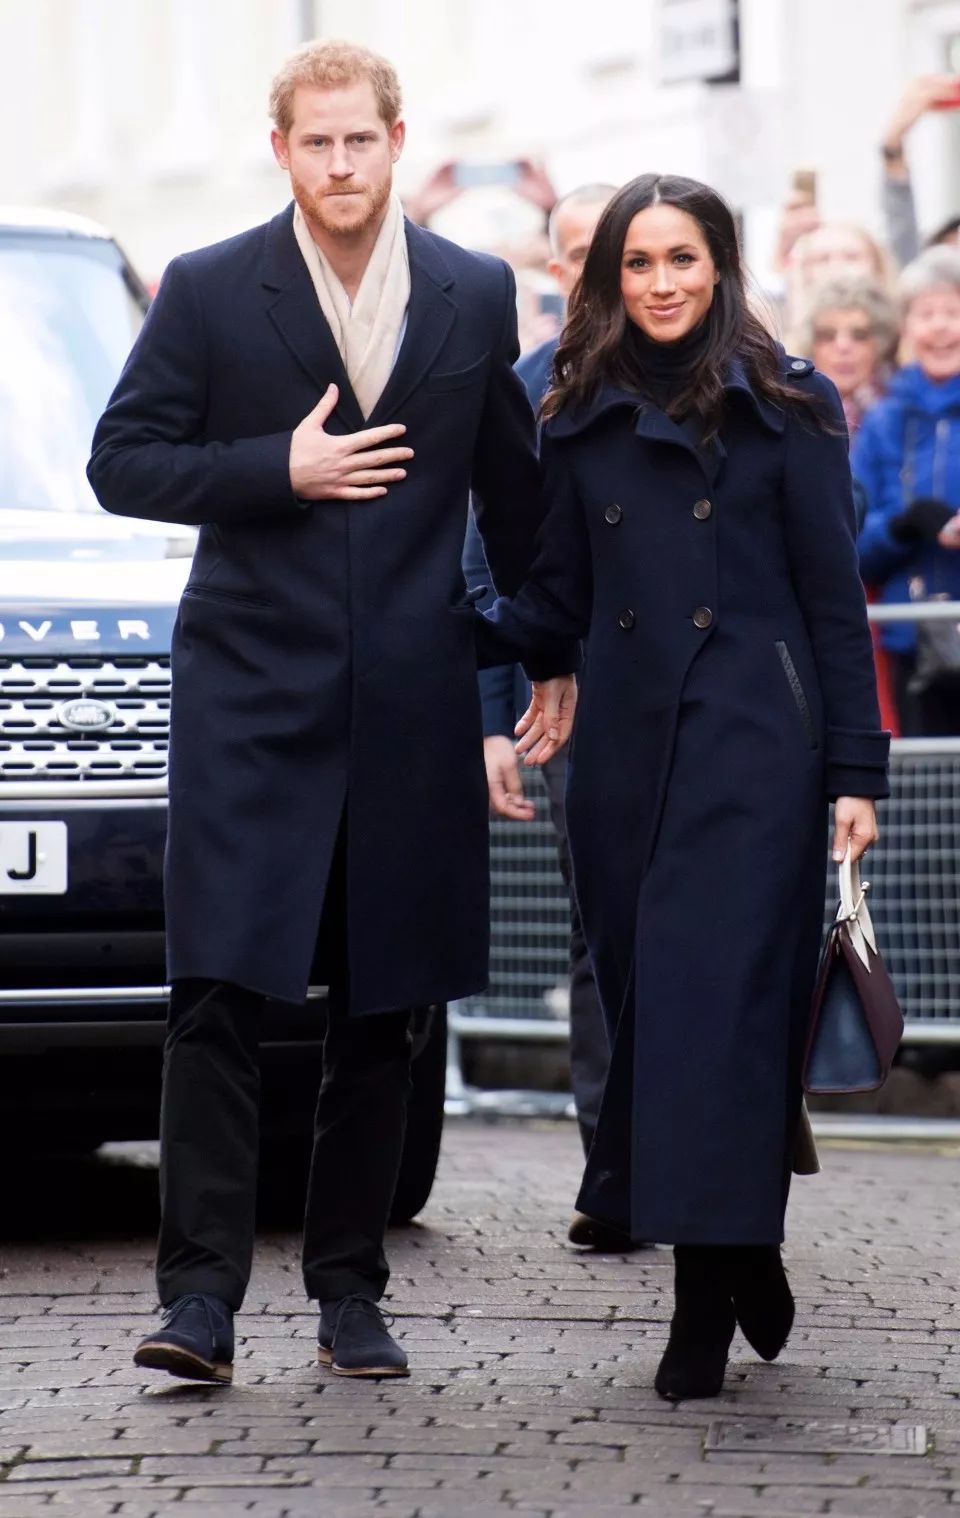 骄傲|英国王妃穿加拿大品牌大衣参加皇室圣诞活动了!